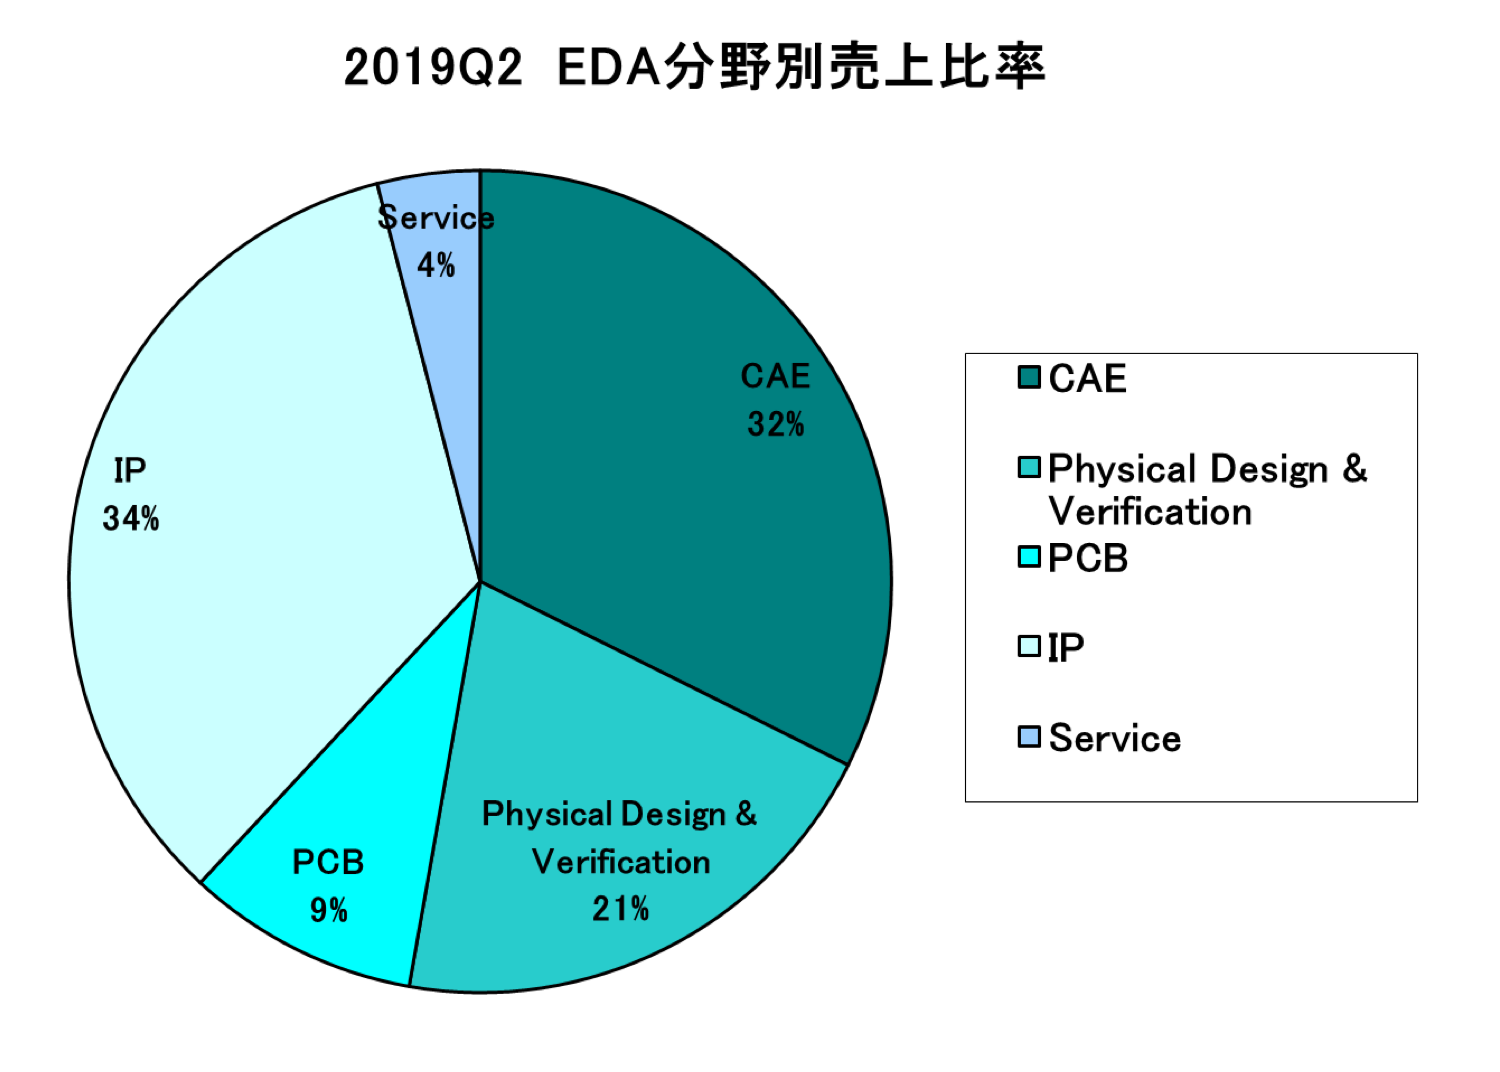 https://www.eda-express.com/%E3%82%B9%E3%82%AF%E3%83%AA%E3%83%BC%E3%83%B3%E3%82%B7%E3%83%A7%E3%83%83%E3%83%88%202019-09-18%208.53.42.png